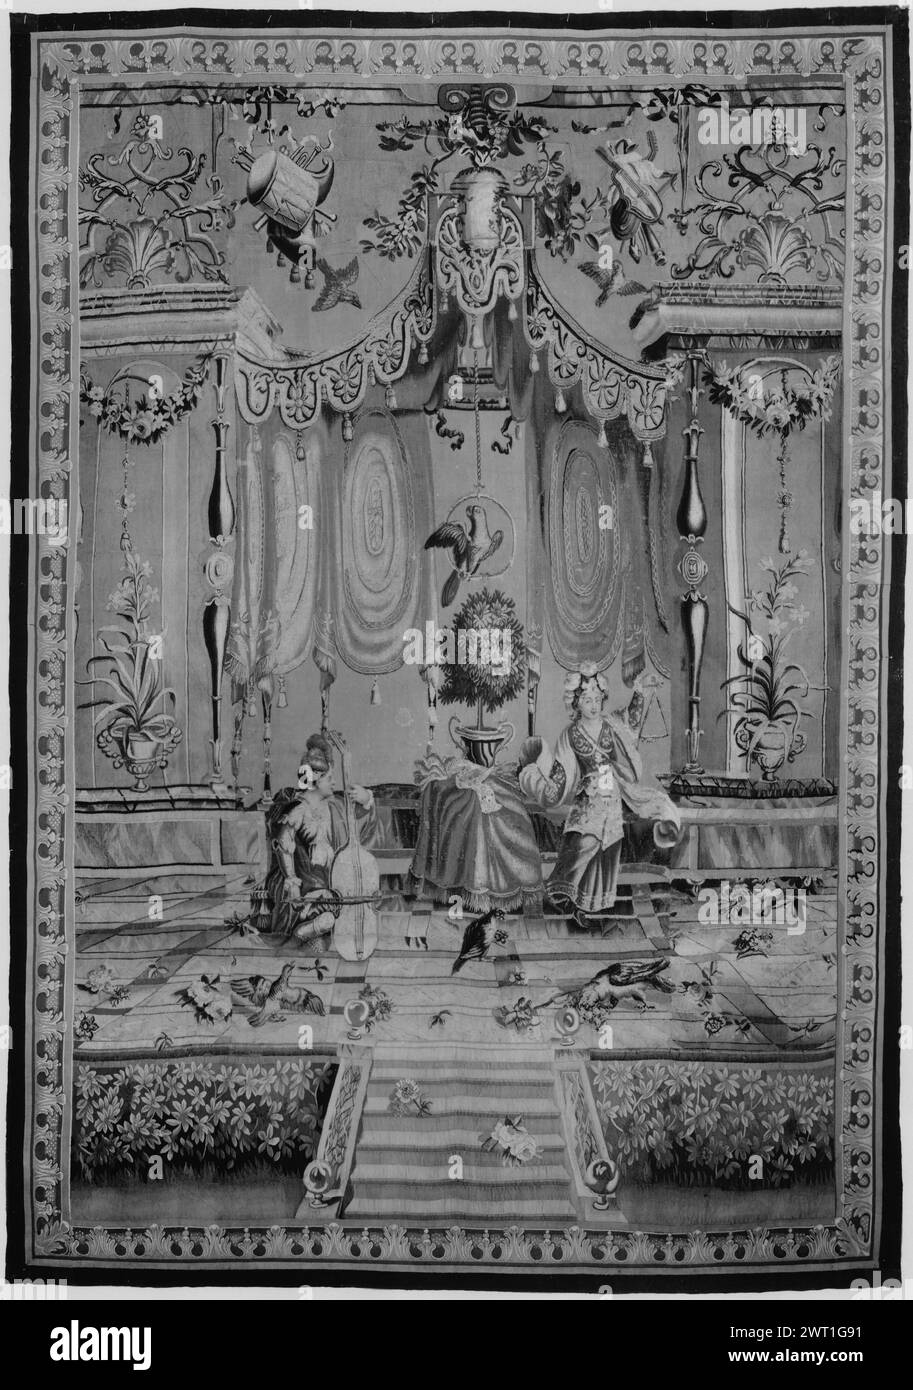 Musicisti. Bérain, Jean (il Vecchio) (francese, 1640-1711) (stile di) [disegnatore] Monnoyer, Jean-Baptiste (francese, 1636-1699) (autore del disegno) [pittore] Béhagle, Philippe i (francese, b.1641-d.1705) (laboratorio) [tessitore] Béhagle, Philippe II (francese, d.1733) (laboratorio 1722) [tessitore] Mérou, Noël Antoine de (francese, (francese, 1688-1732 Testry'1734) dimensioni: cultura sconosciuta: centro di tessitura francese: Beauvais storia di proprietà: French & Co. acquistato da H.S. de Souhami 24/11/1913; venduto a H. McBride 6/11/1921. Schermo architettonico Foto Stock